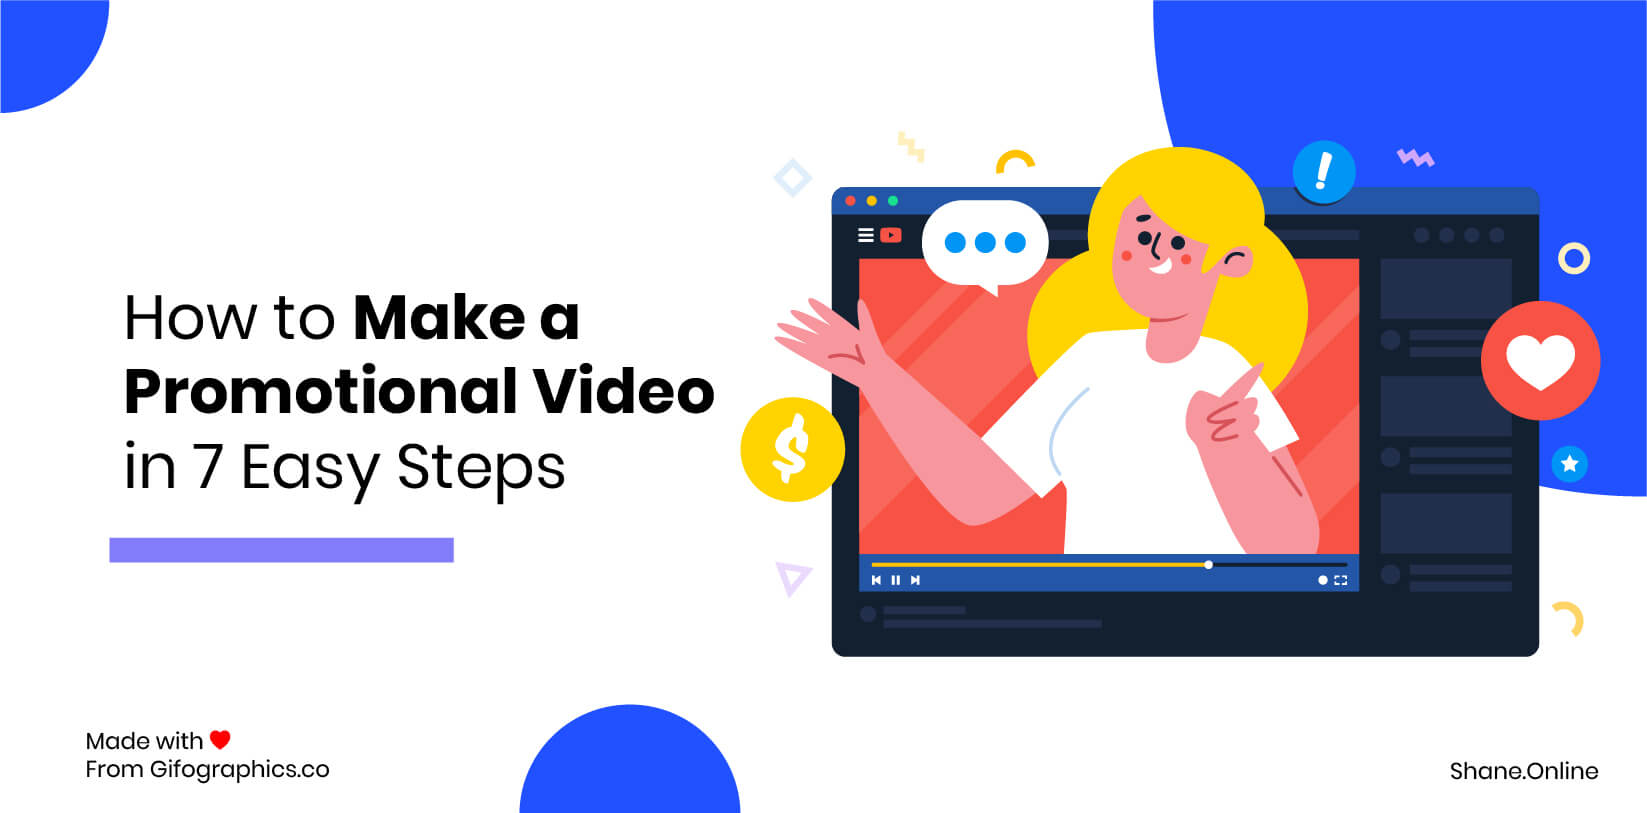 كيف تصنع فيديو ترويجي في 7 خطوات سهلة